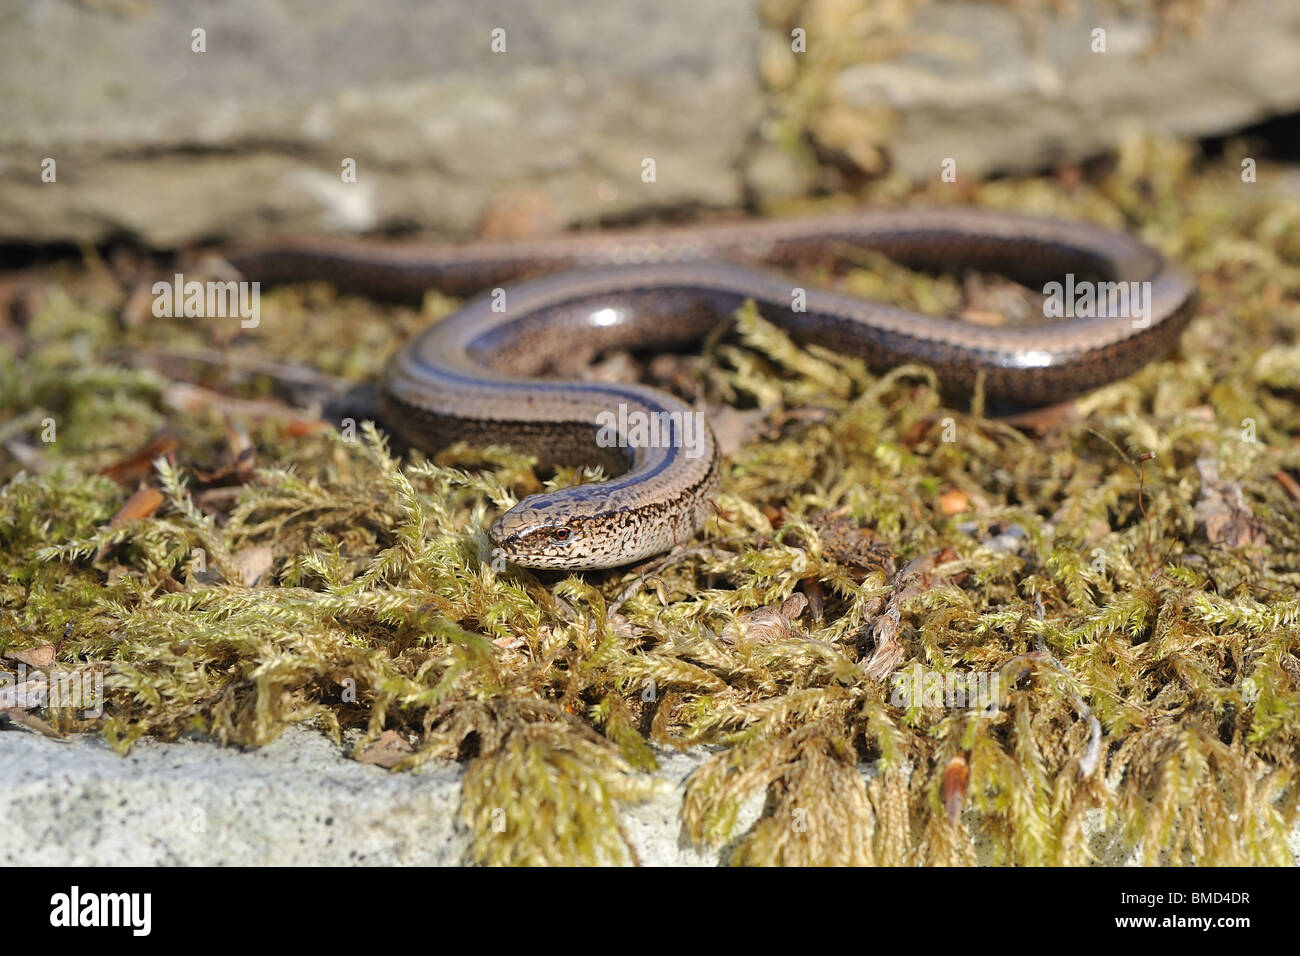 Female slow worm (Anguis fragilis) crawling on mossy stone Stock Photo